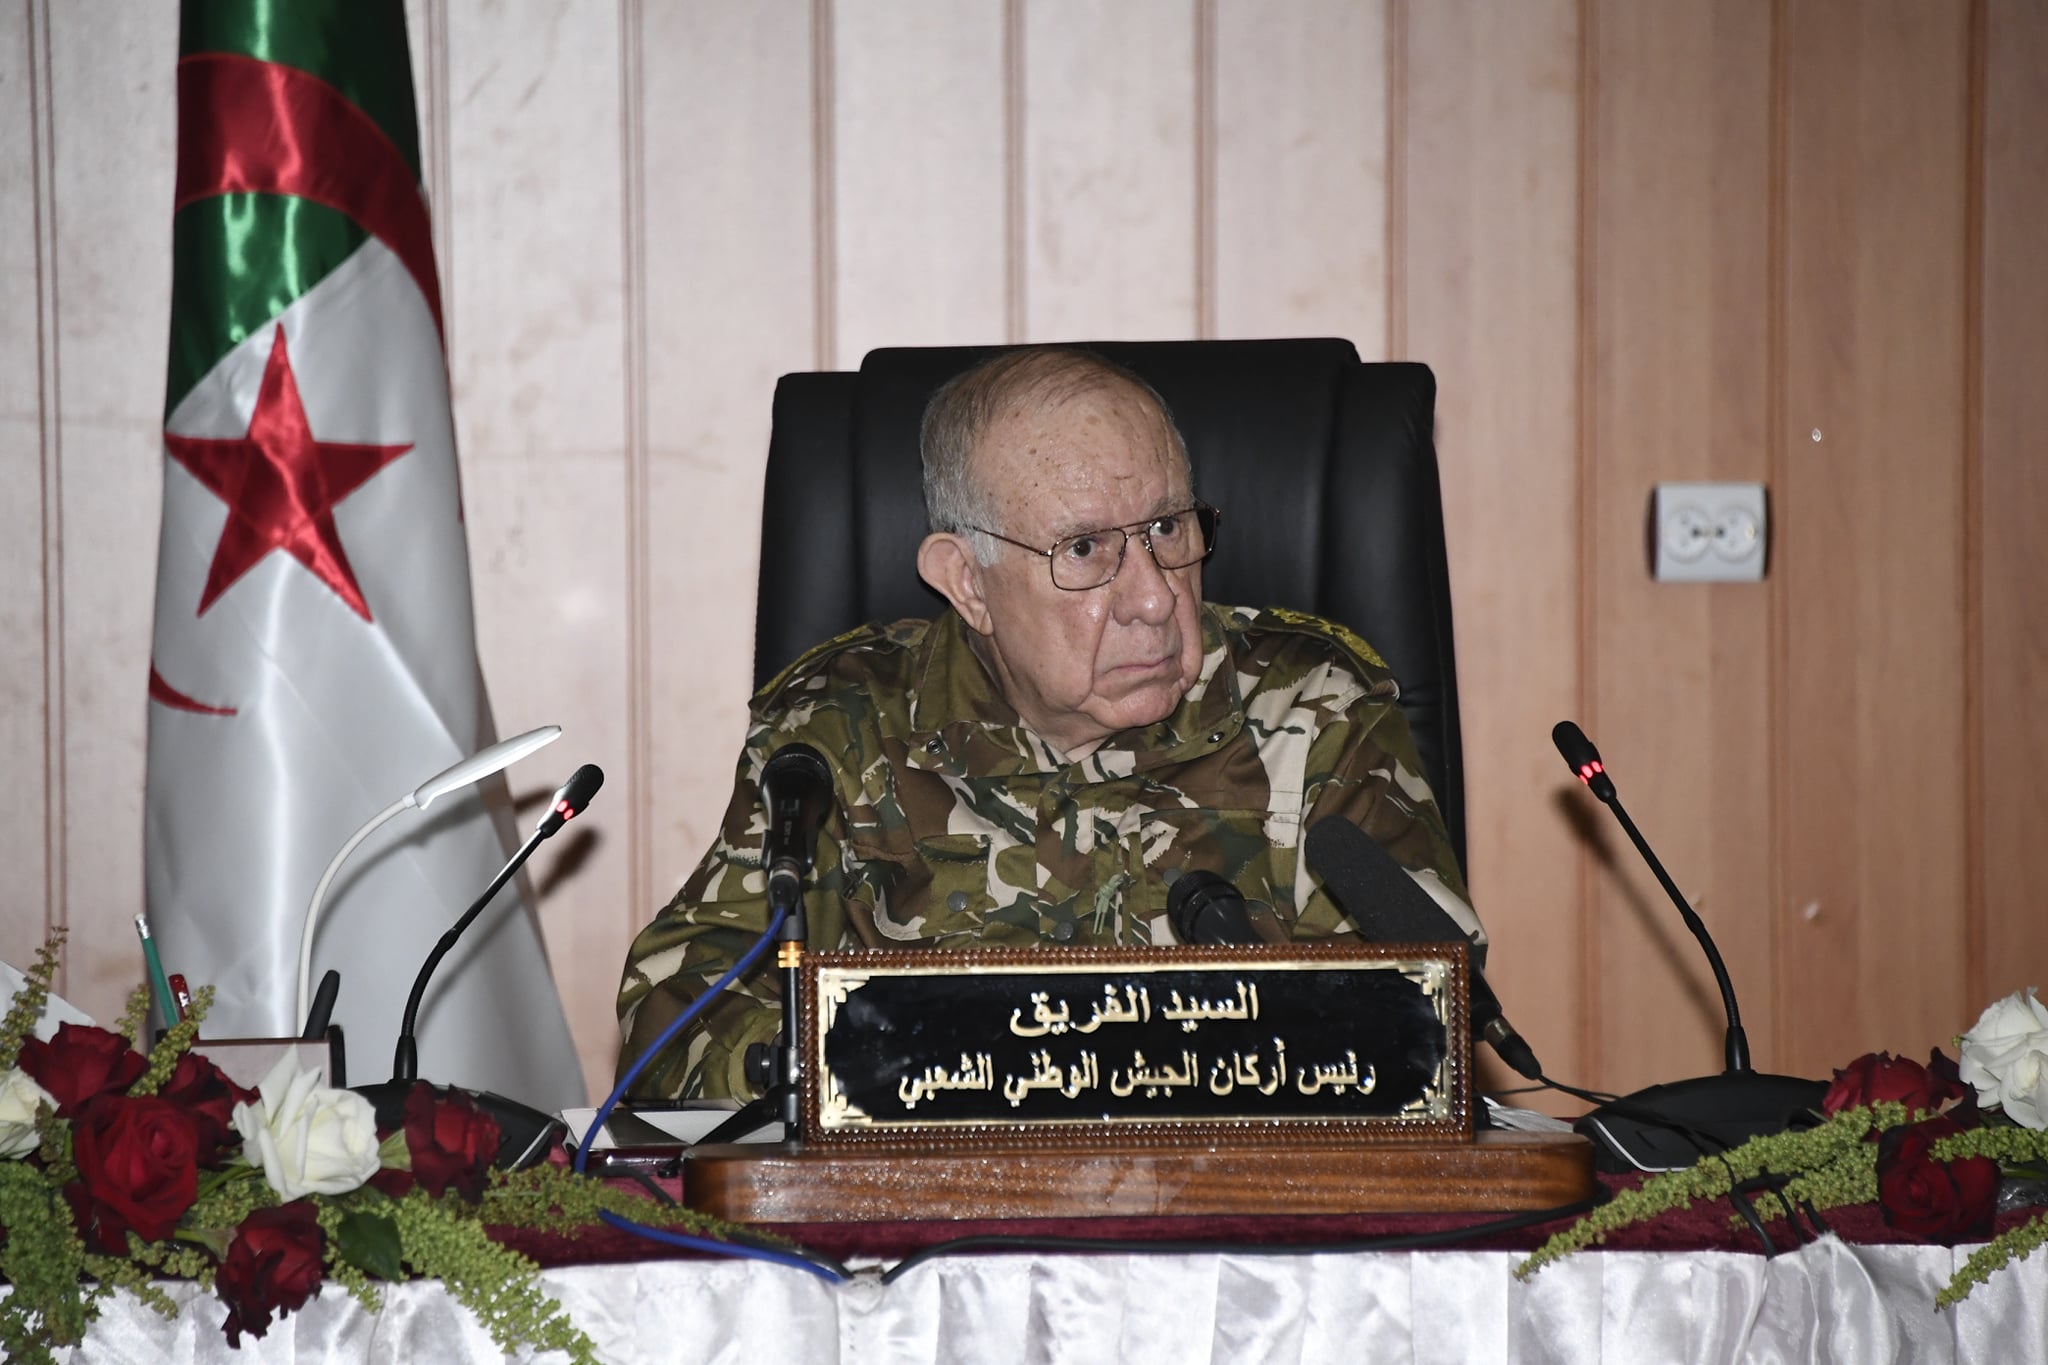  قائد الأركان الجزائري الفريق أول سعيد شنقريحة (الدفاع الجزائرية)